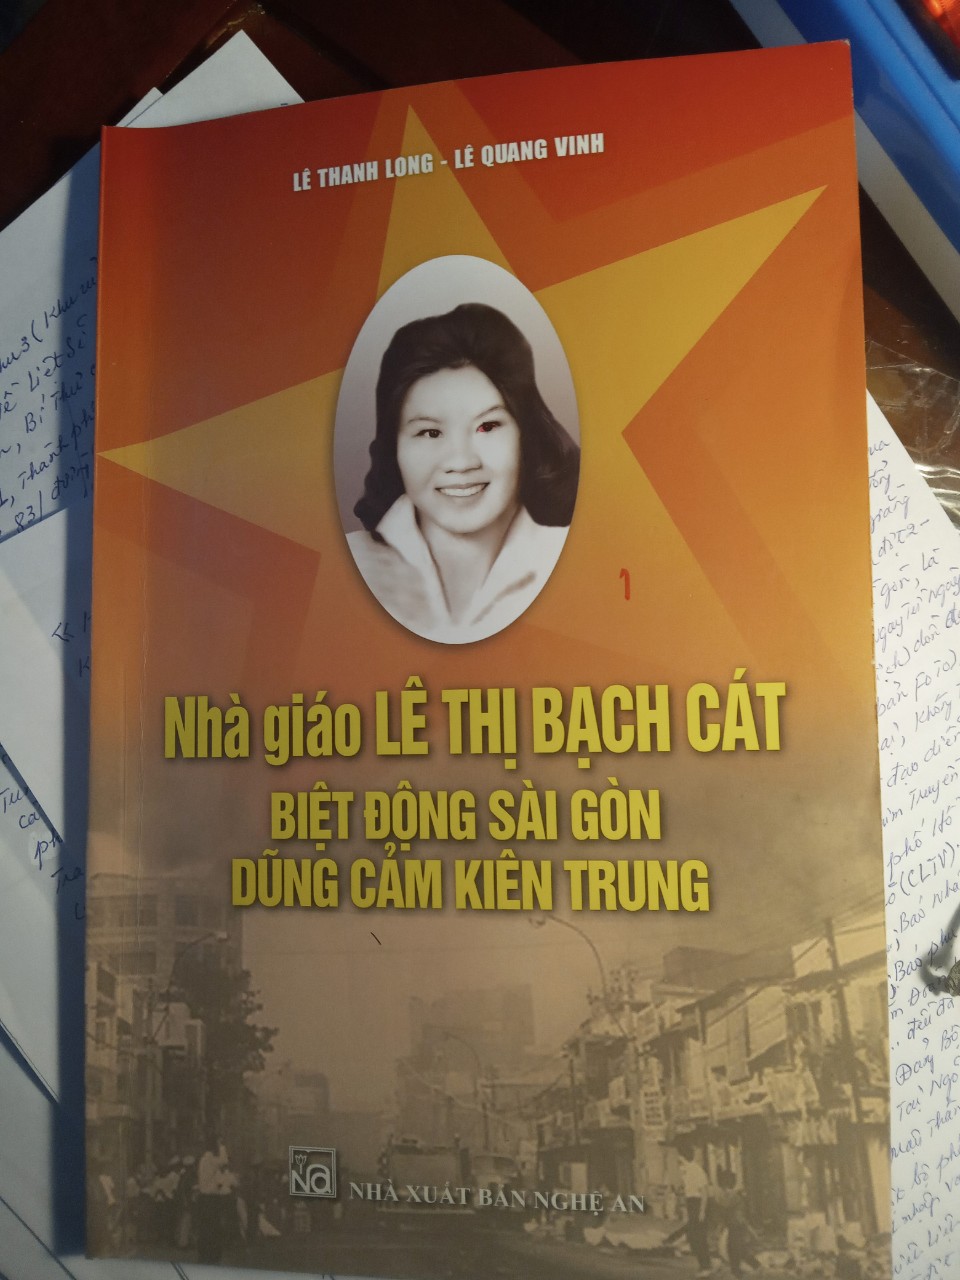 “Nhà giáo Lê Thị Bạch Cát biệt động Sài Gòn dũng cảm kiên trung” một tư liệu lịch sử quý giá về nữ liệt sỹ phố biển Cửa Lò - 1